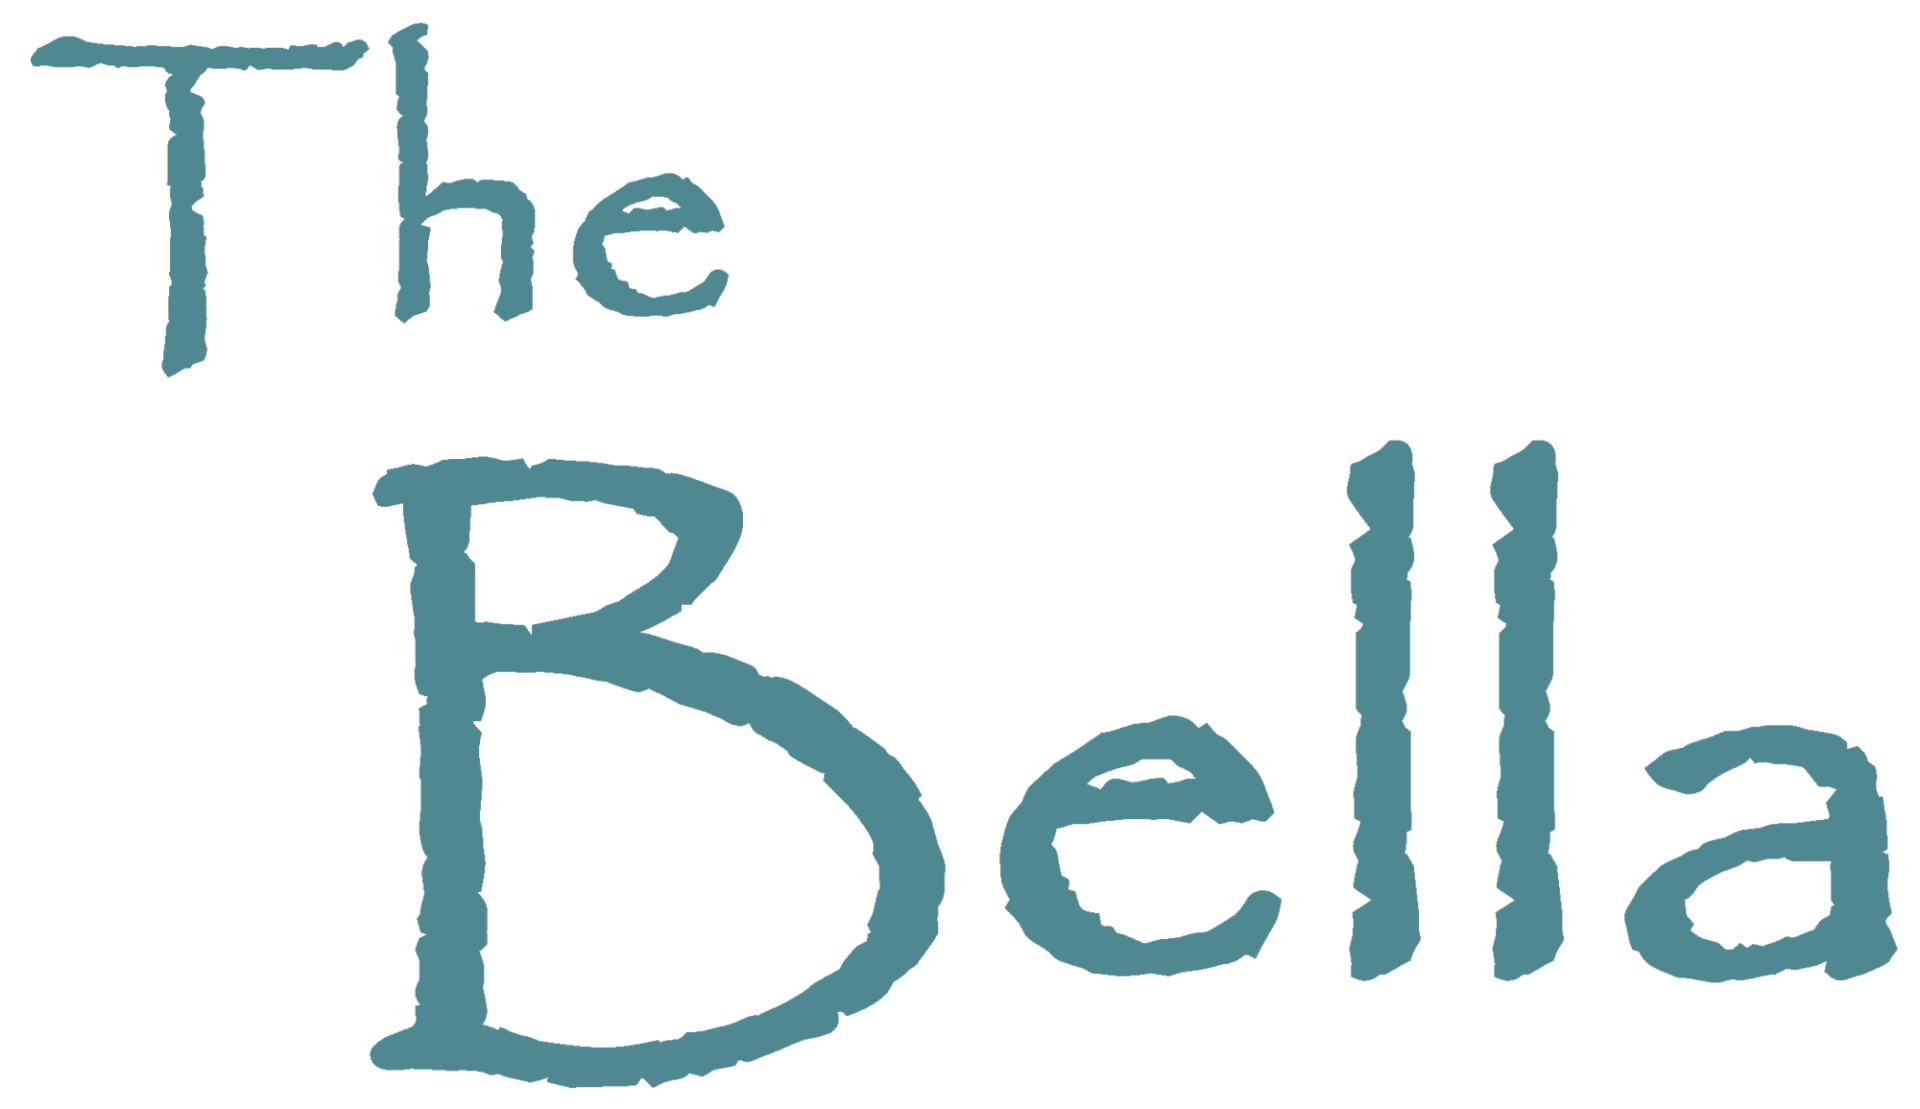 The Bella